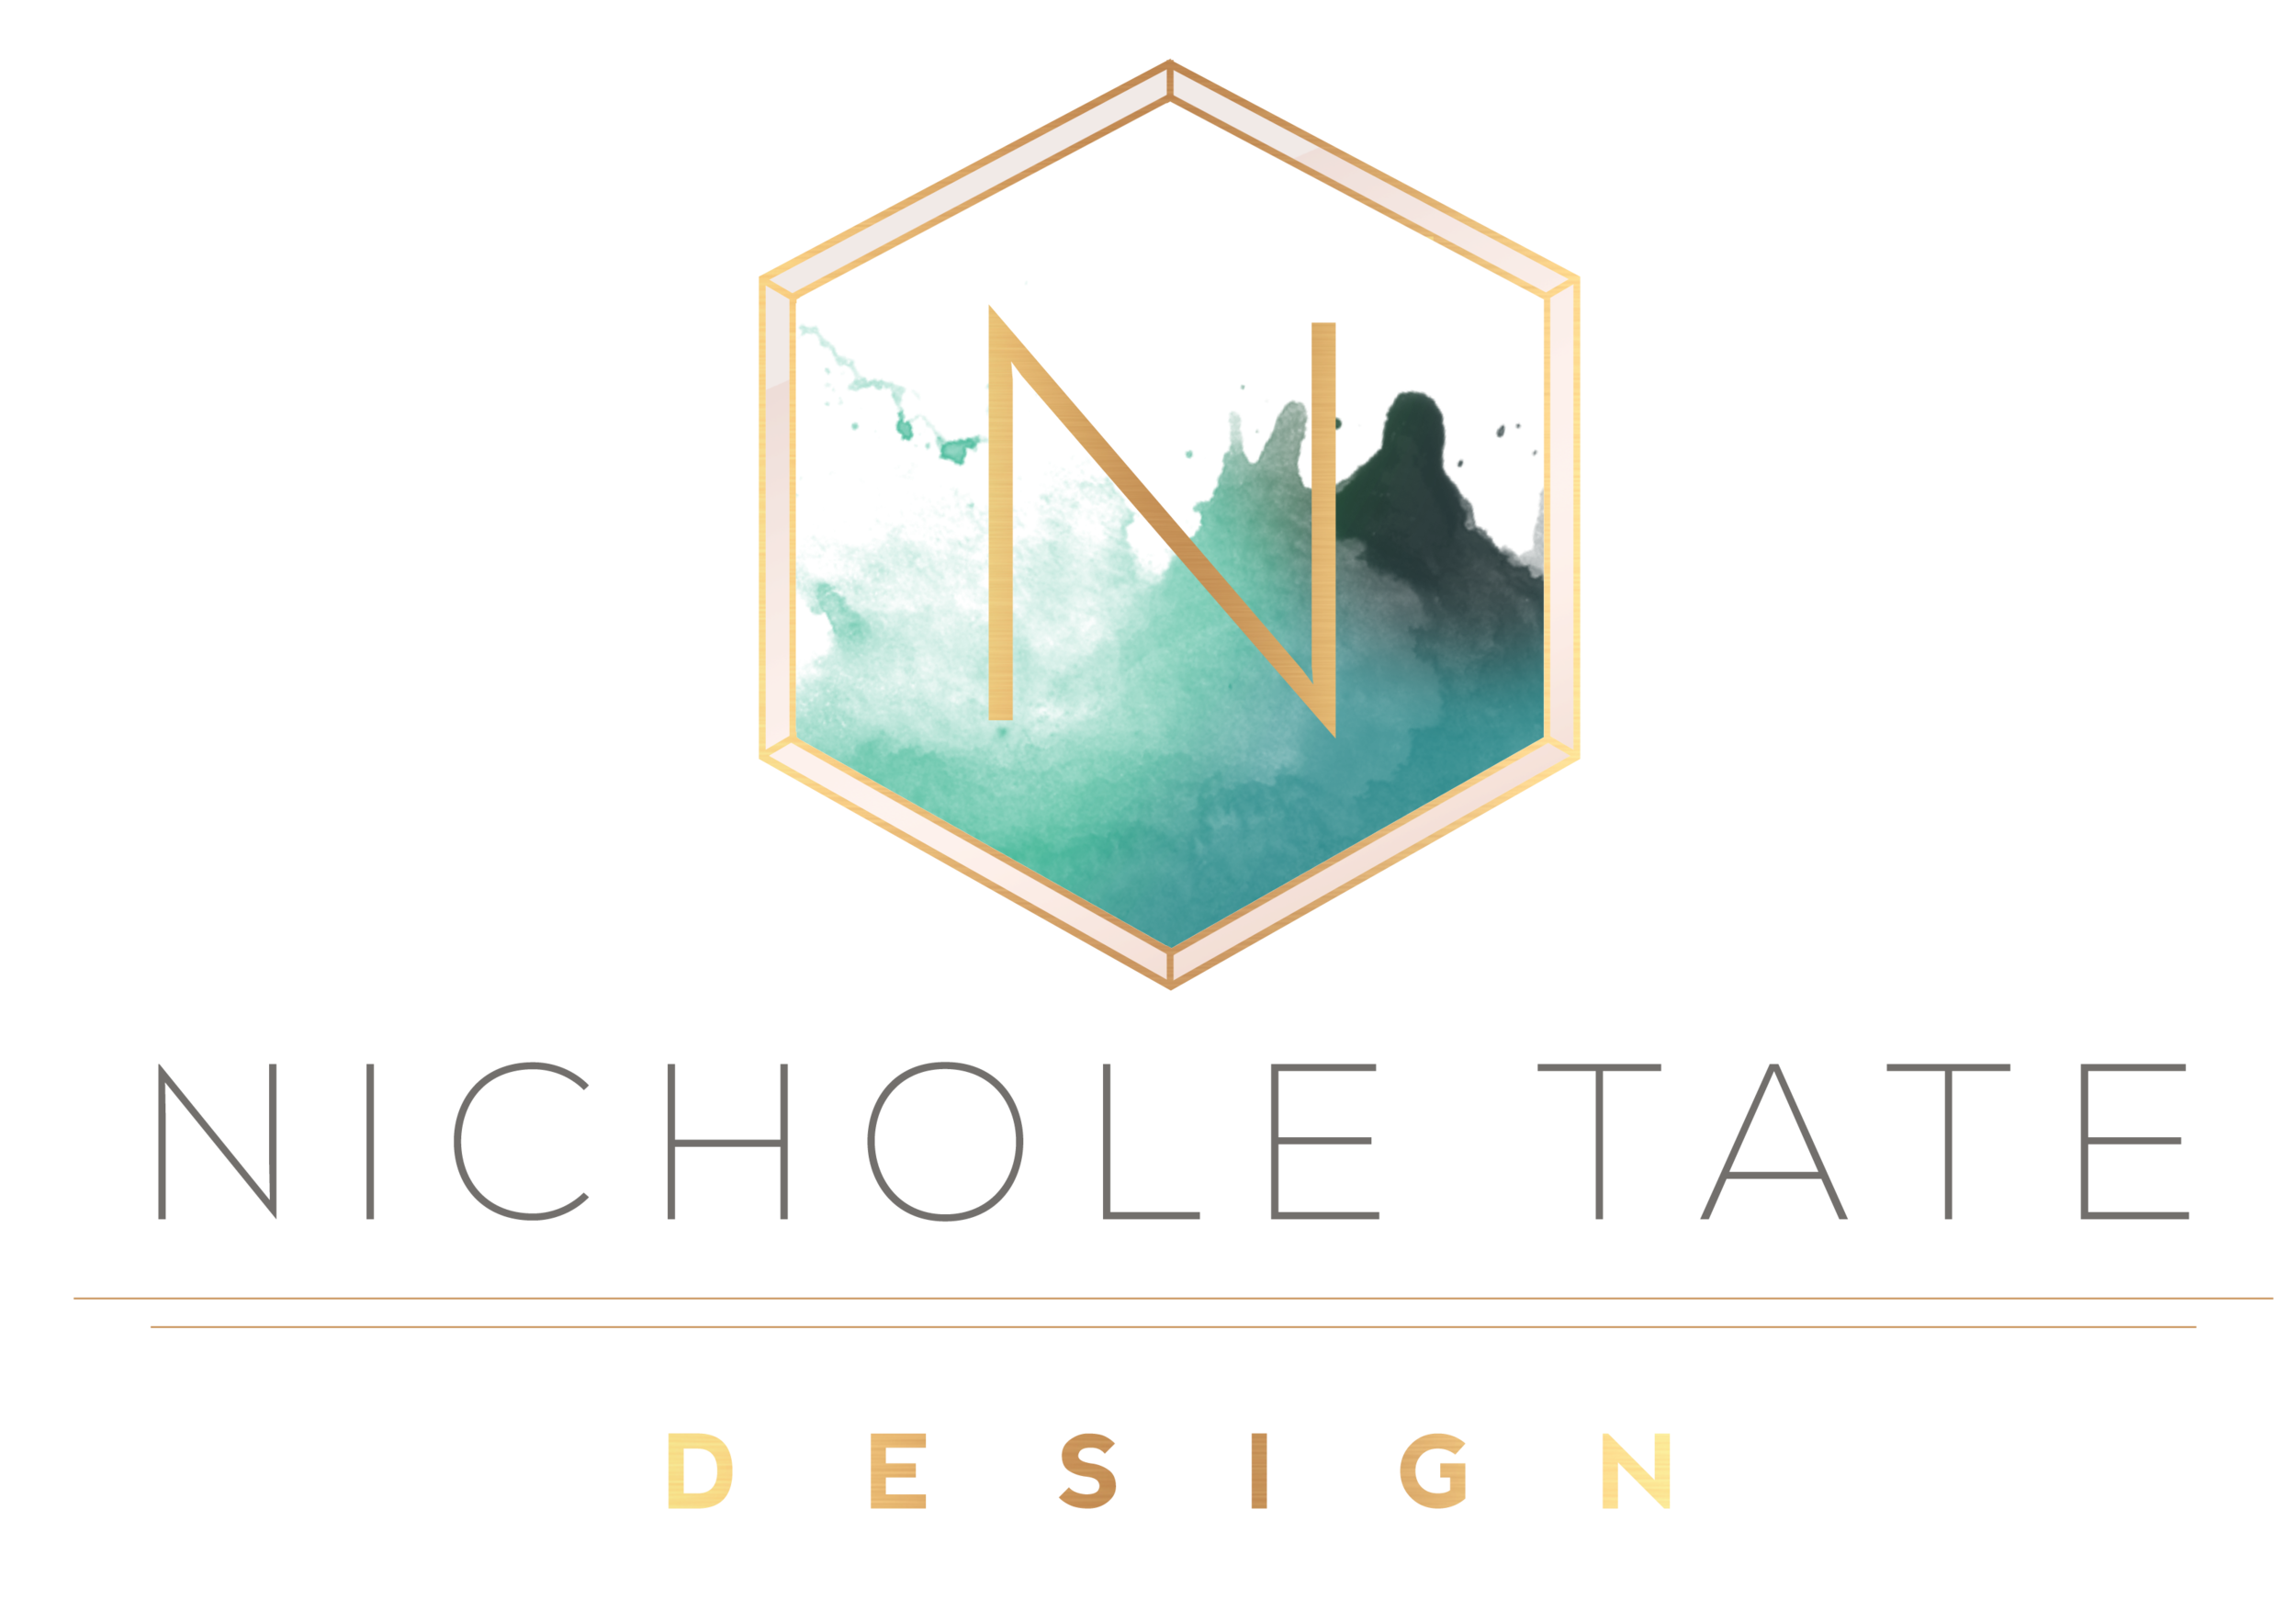 Nichole Tate Design